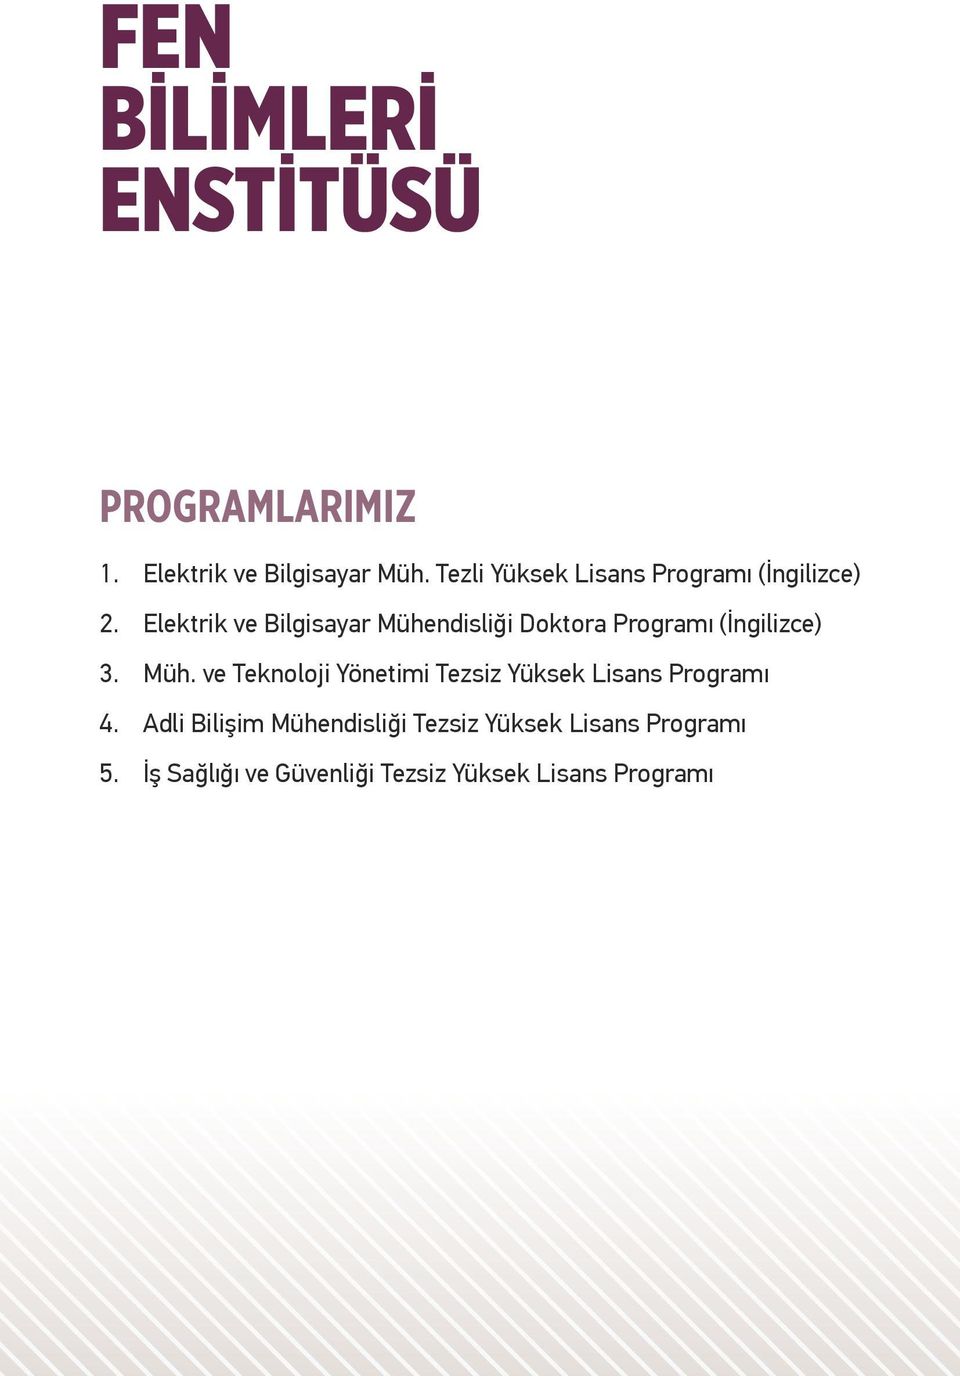 Elektrik ve Bilgisayar Mühendisliği Doktora Programı (İngilizce) 3. Müh. ve Teknoloji Yönetimi Tezsiz Yüksek Lisans Programı 4.